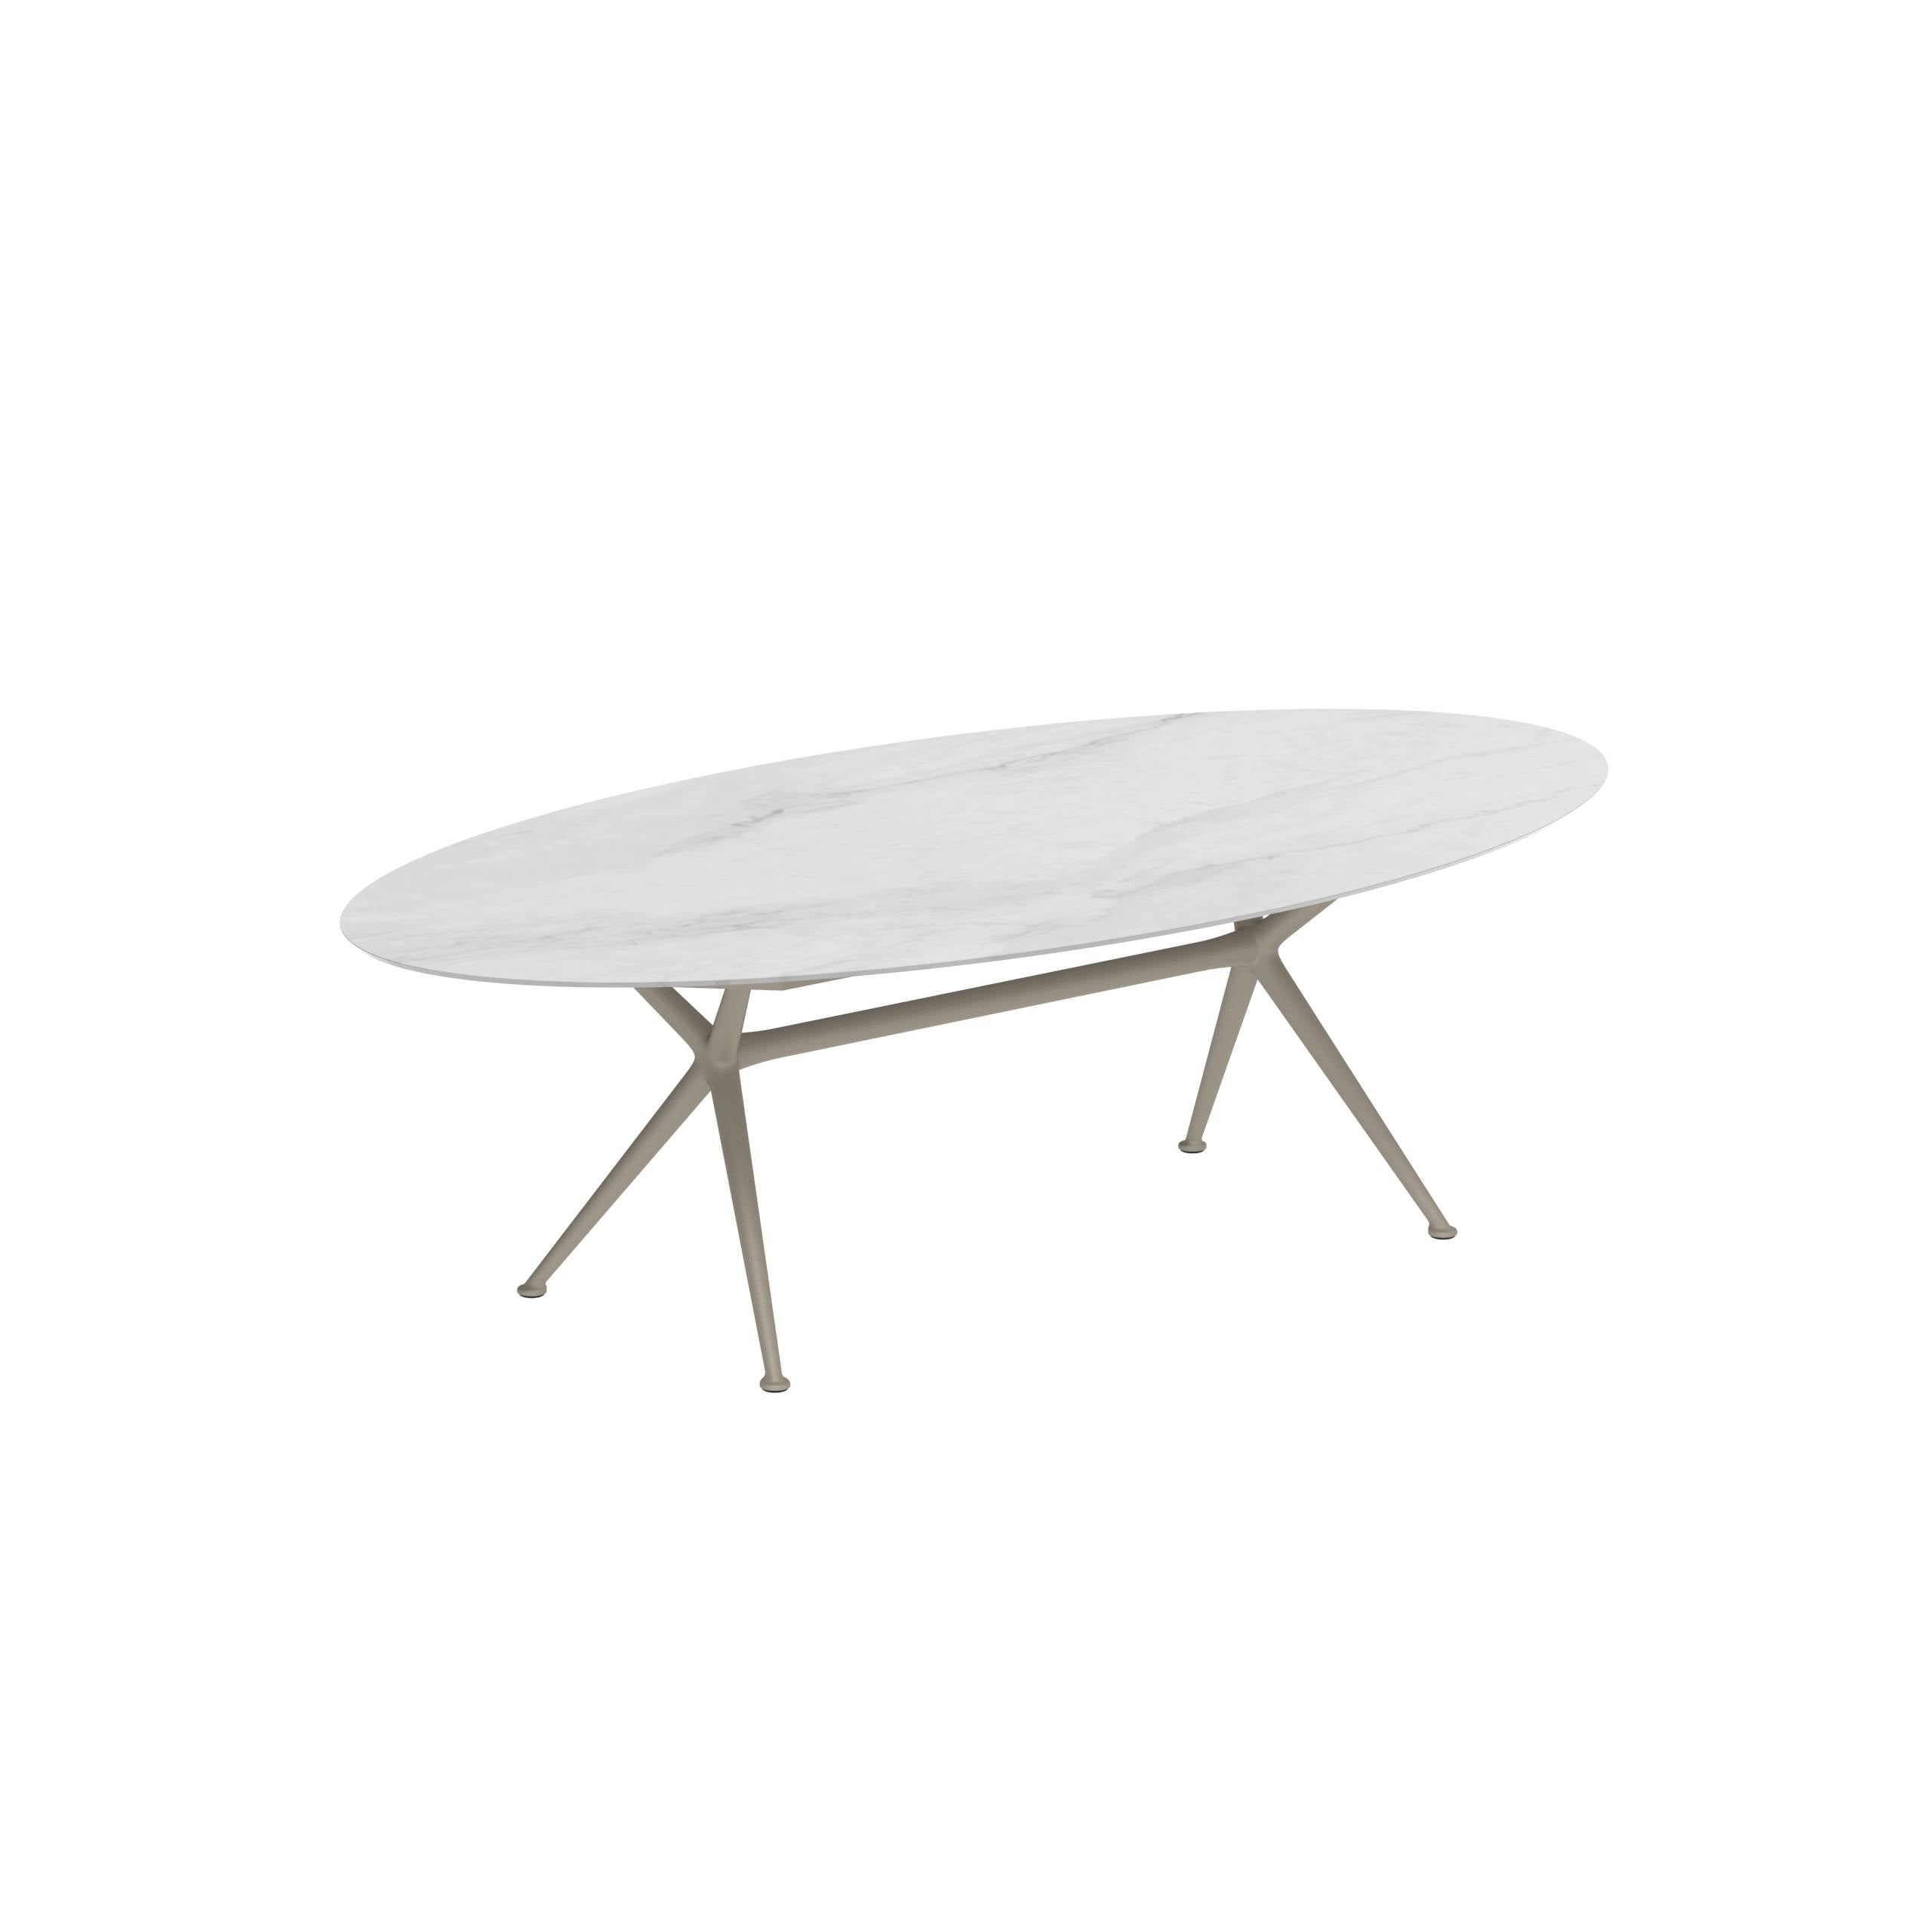 Exes Table Ellipse 250x130cm Alu Legs Sand - Table Top Ceramic Bianco Statuario